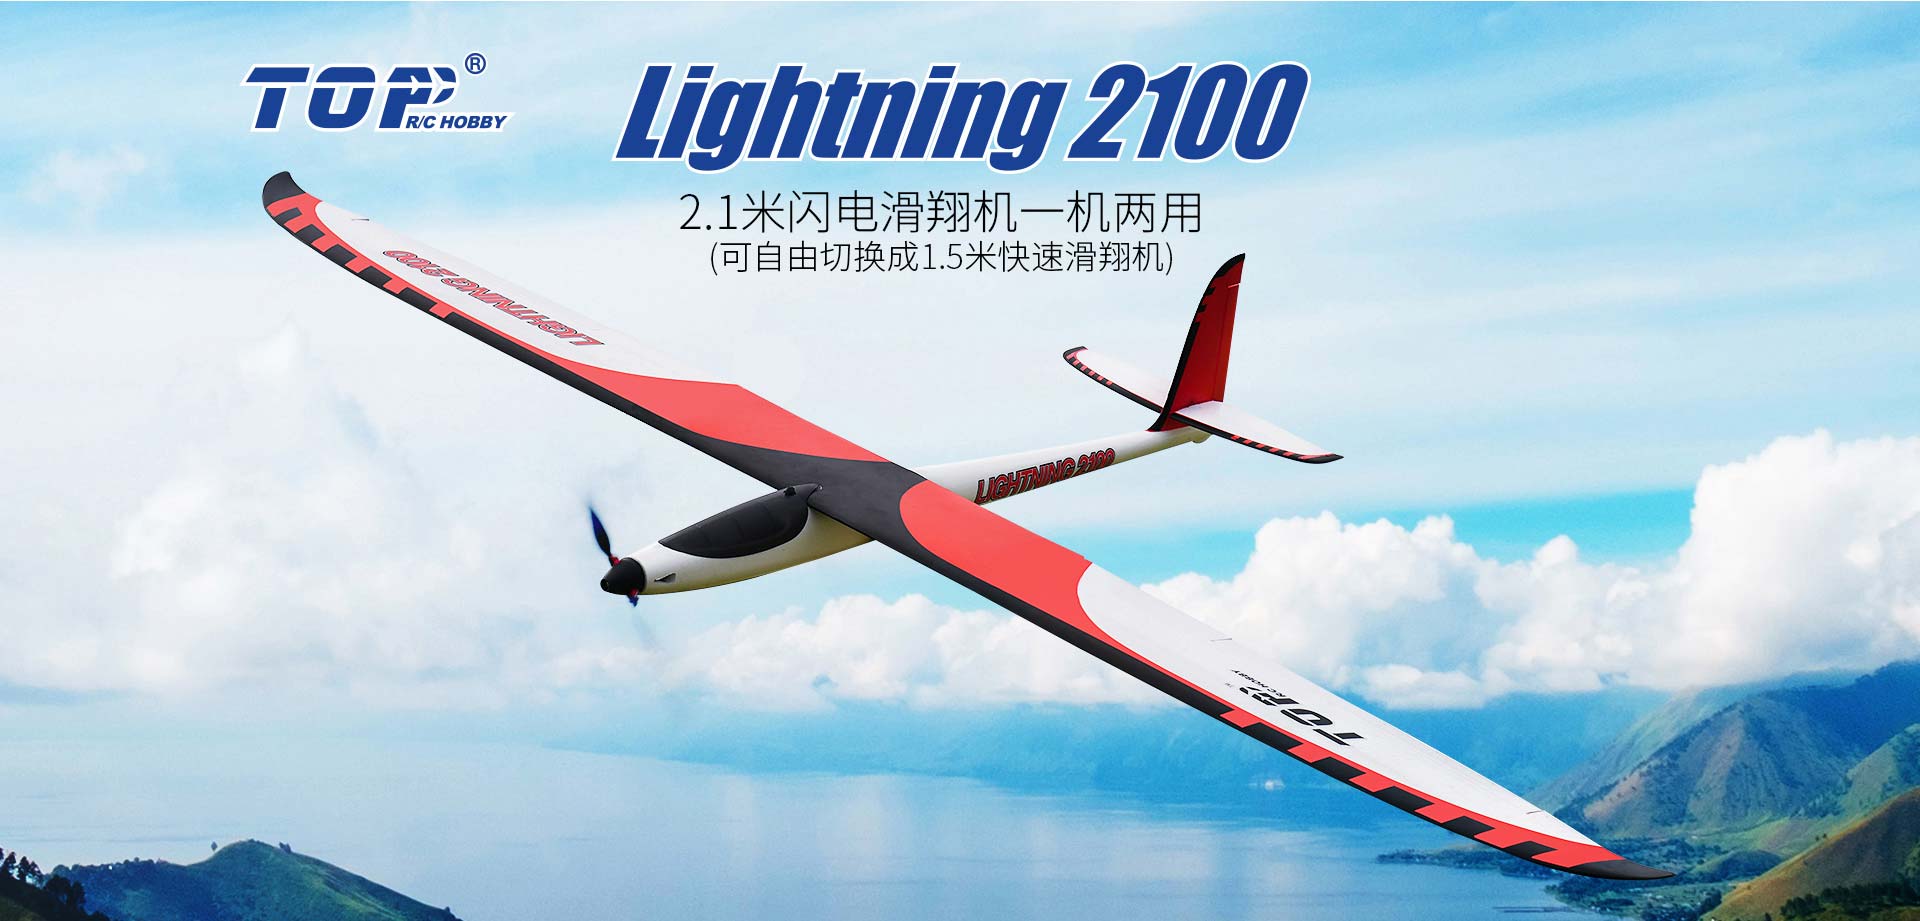 2100MM Lightning 滑翔机